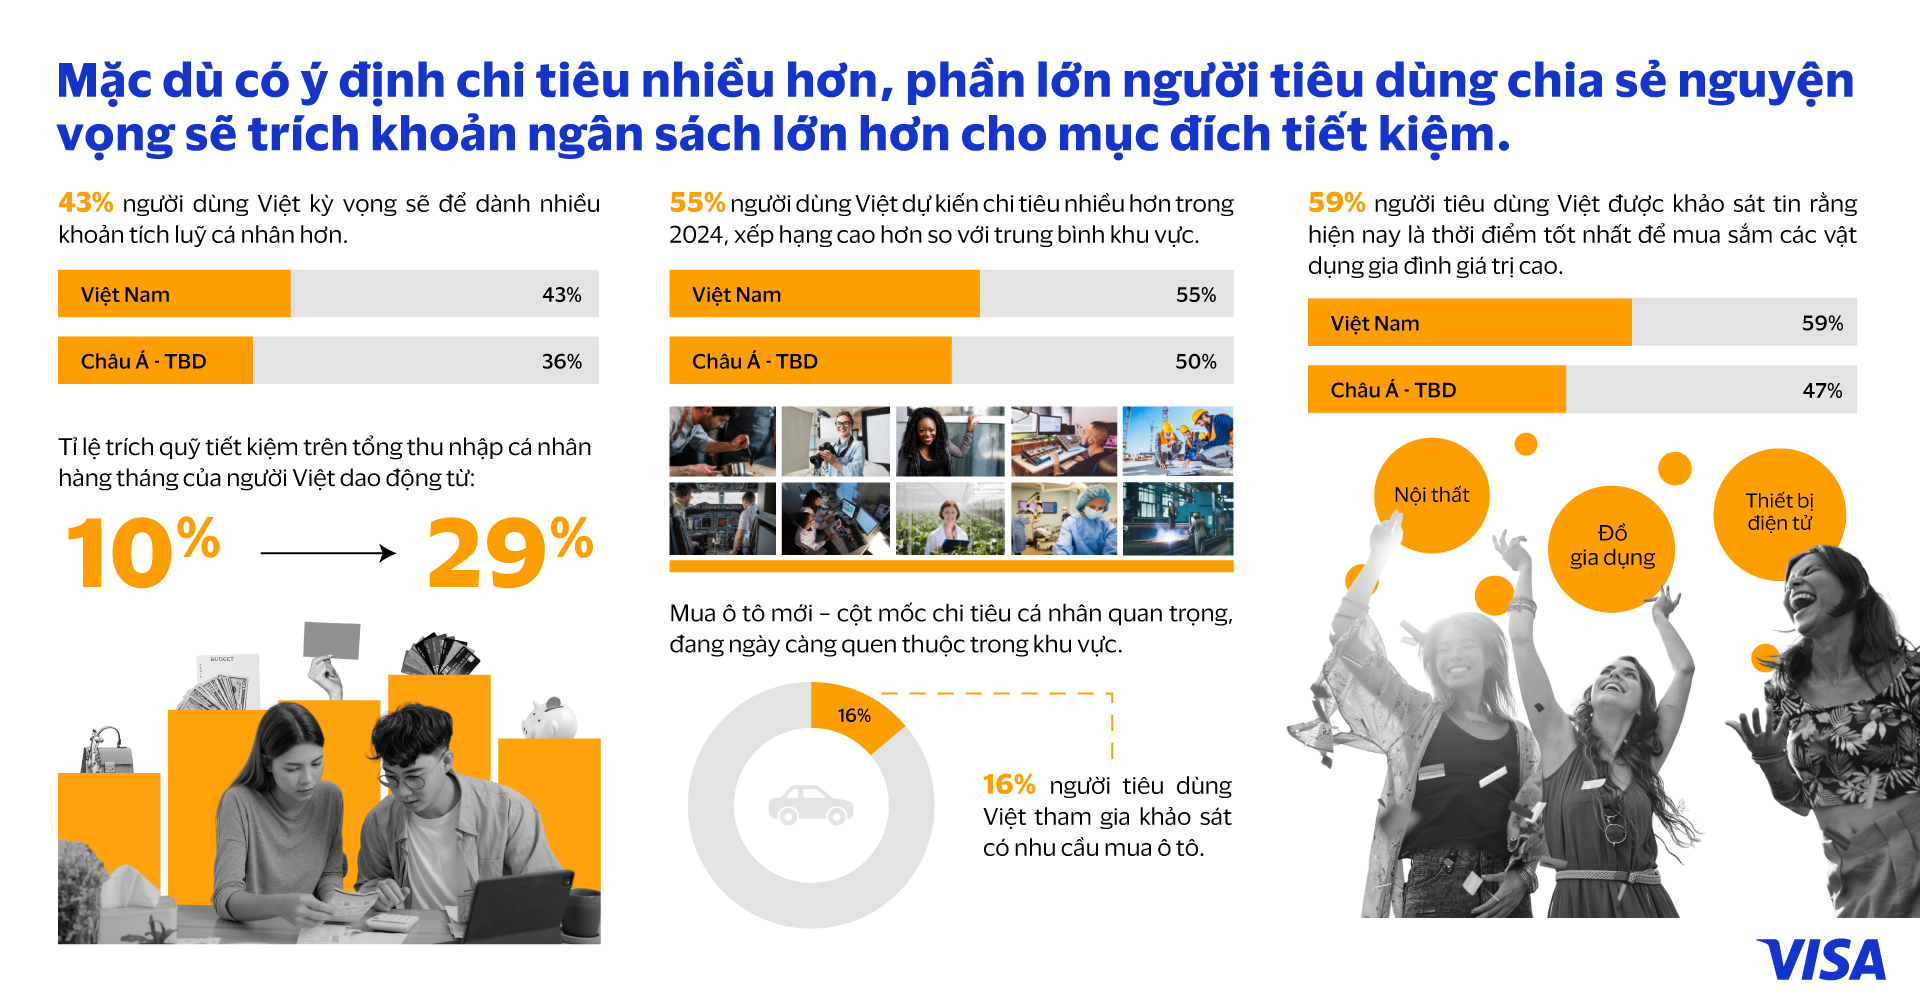 Năm 2024, người Việt sẽ tiêu dùng thế nào? - Visa infographic Vie2